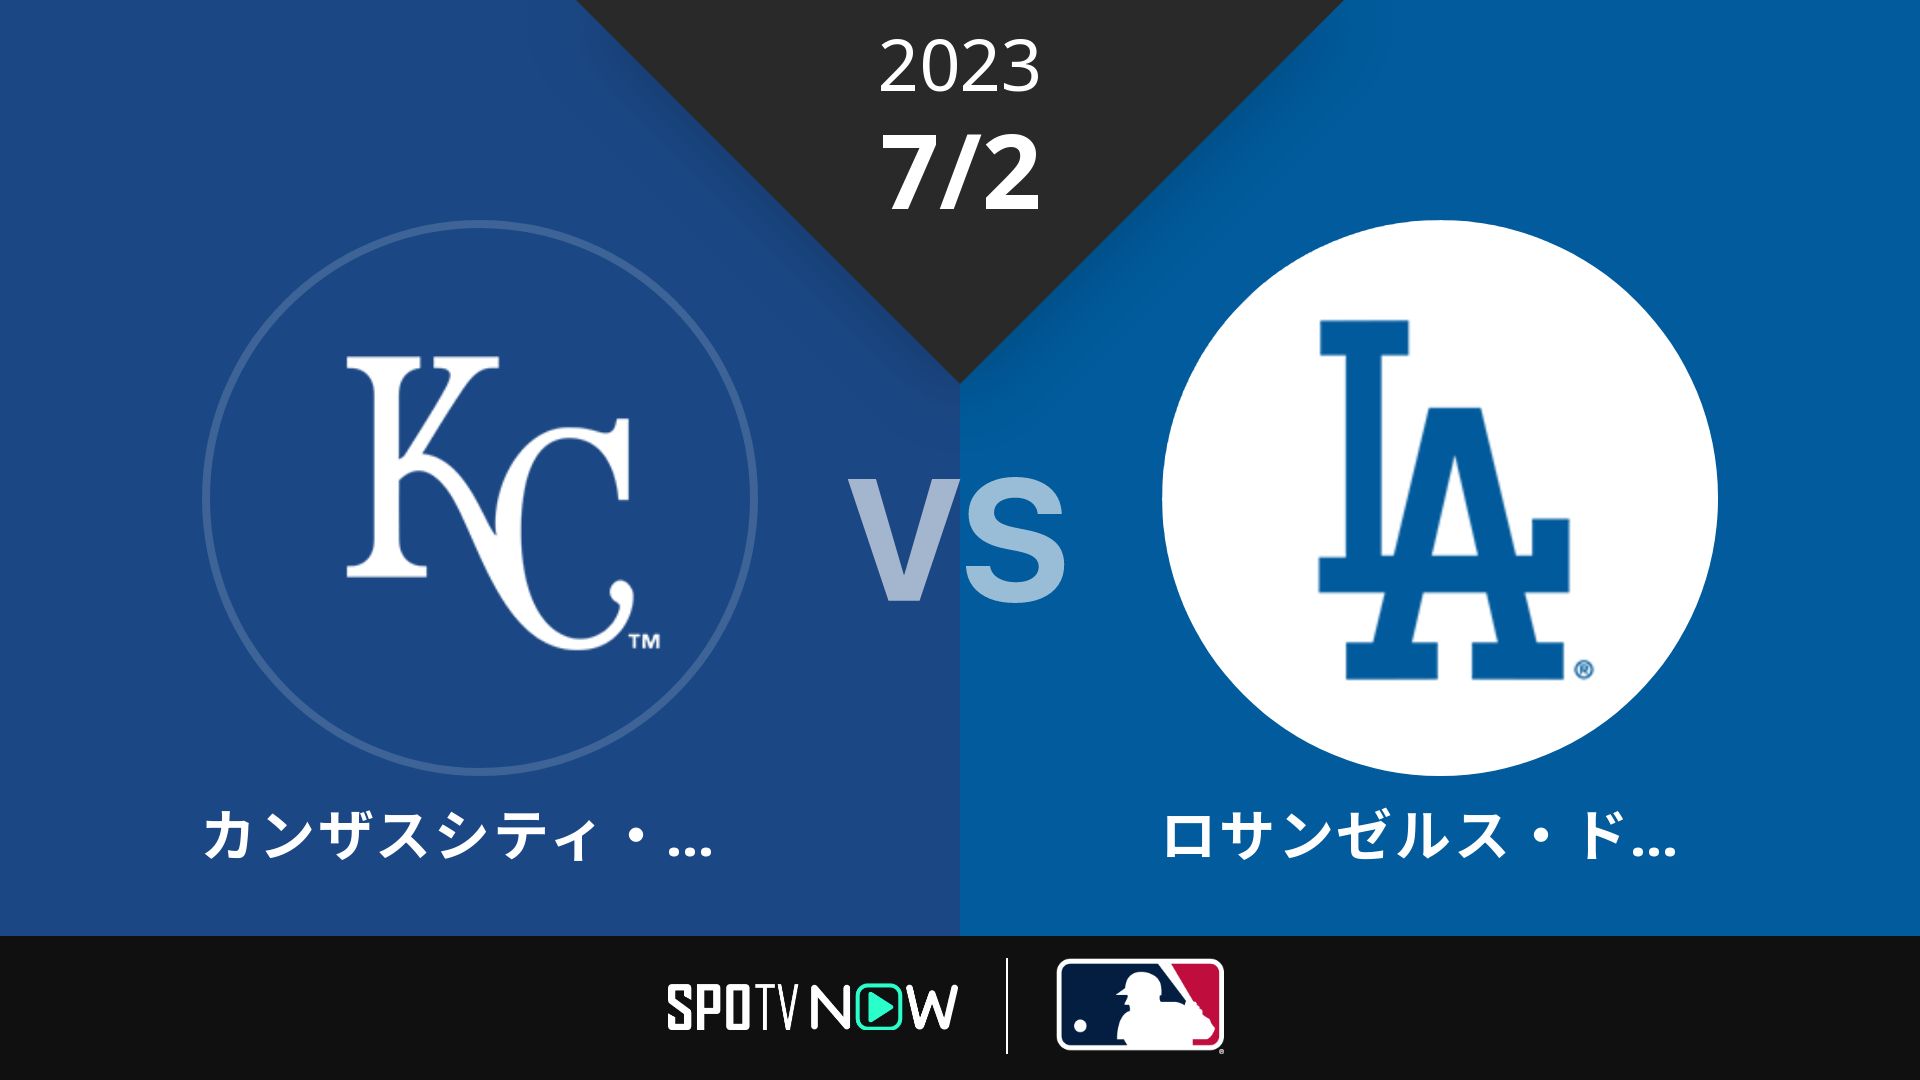 2023/7/2 ロイヤルズ vs ドジャース [MLB]